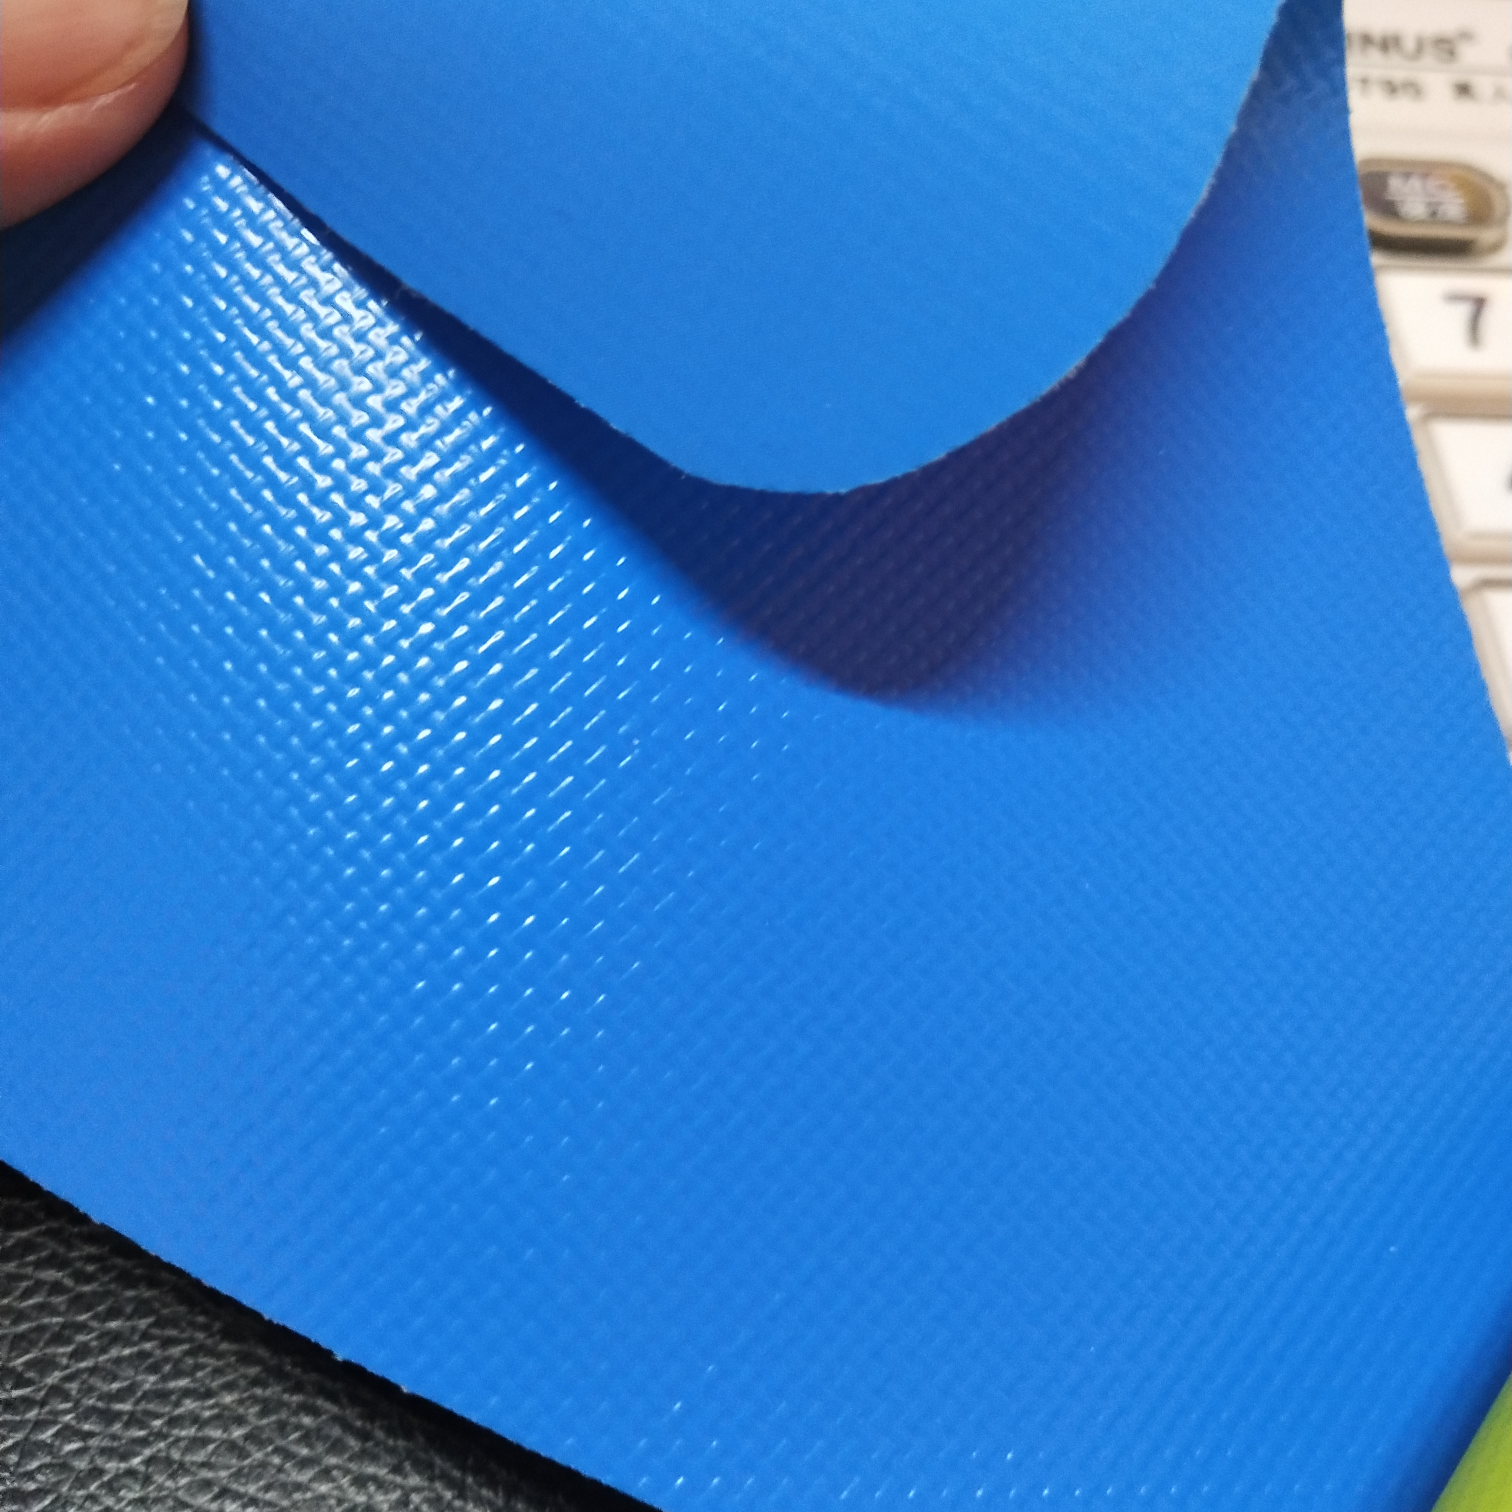 优质雾面0.45mm厚浅蓝色PVC夹网布  箱包布  机器罩家具罩  体育游乐产品  格种箱包袋专用面料详情图1